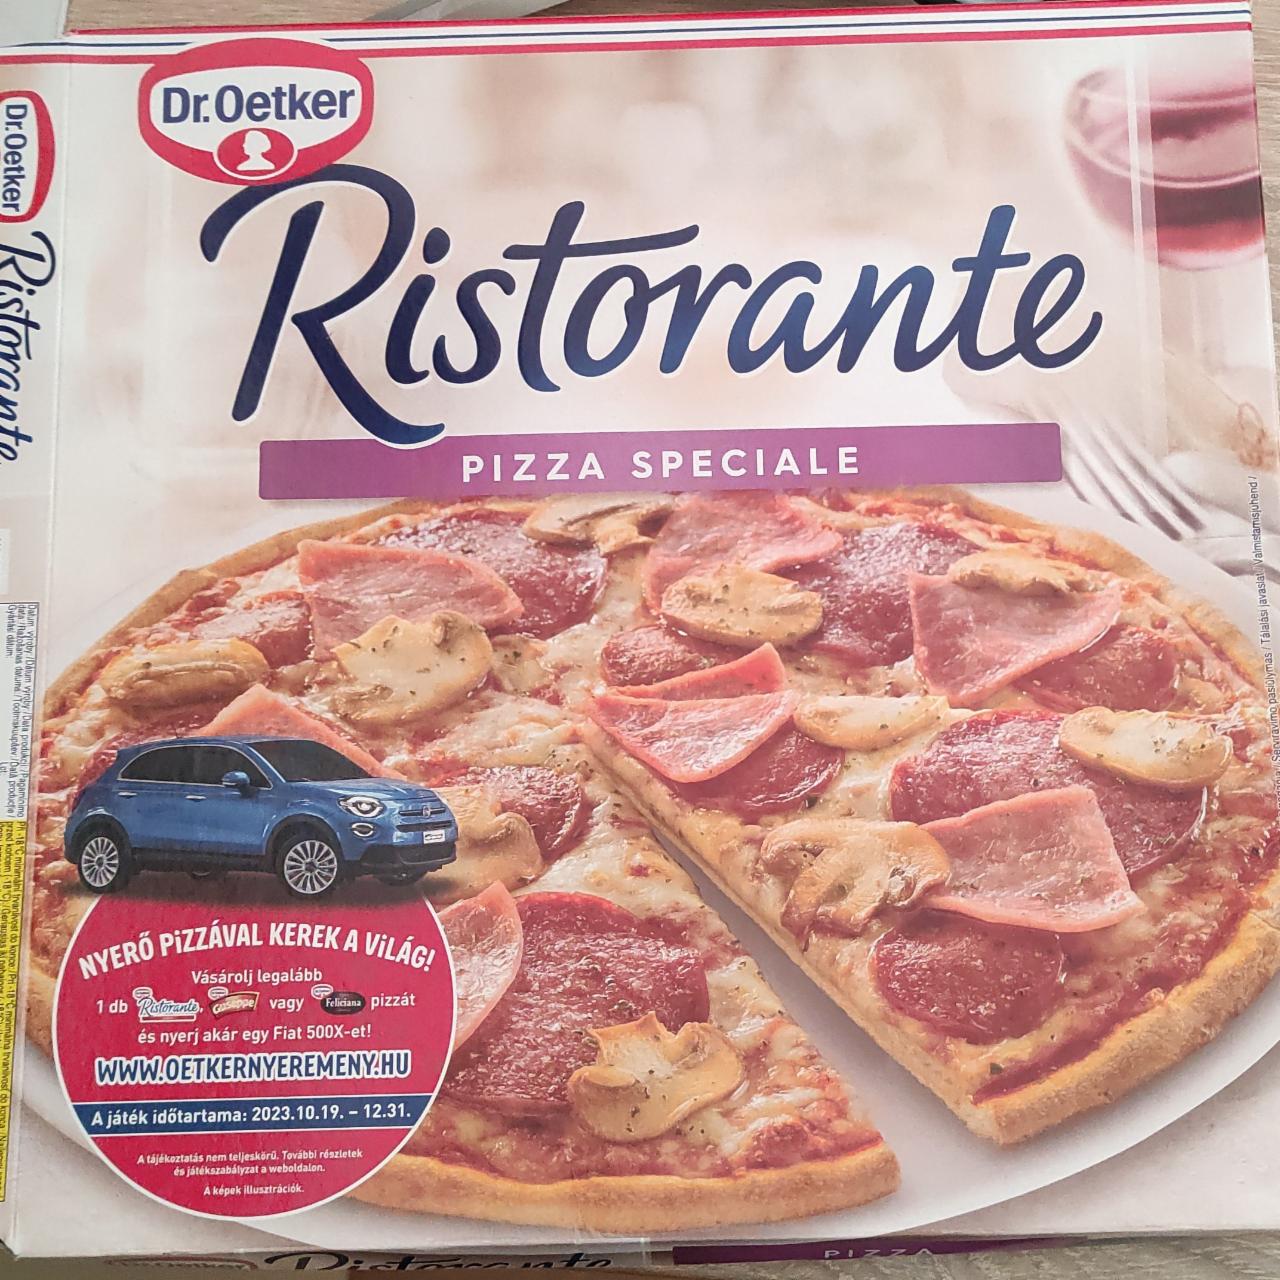 Képek - Ristoranta pizza speciale Dr.Oetker